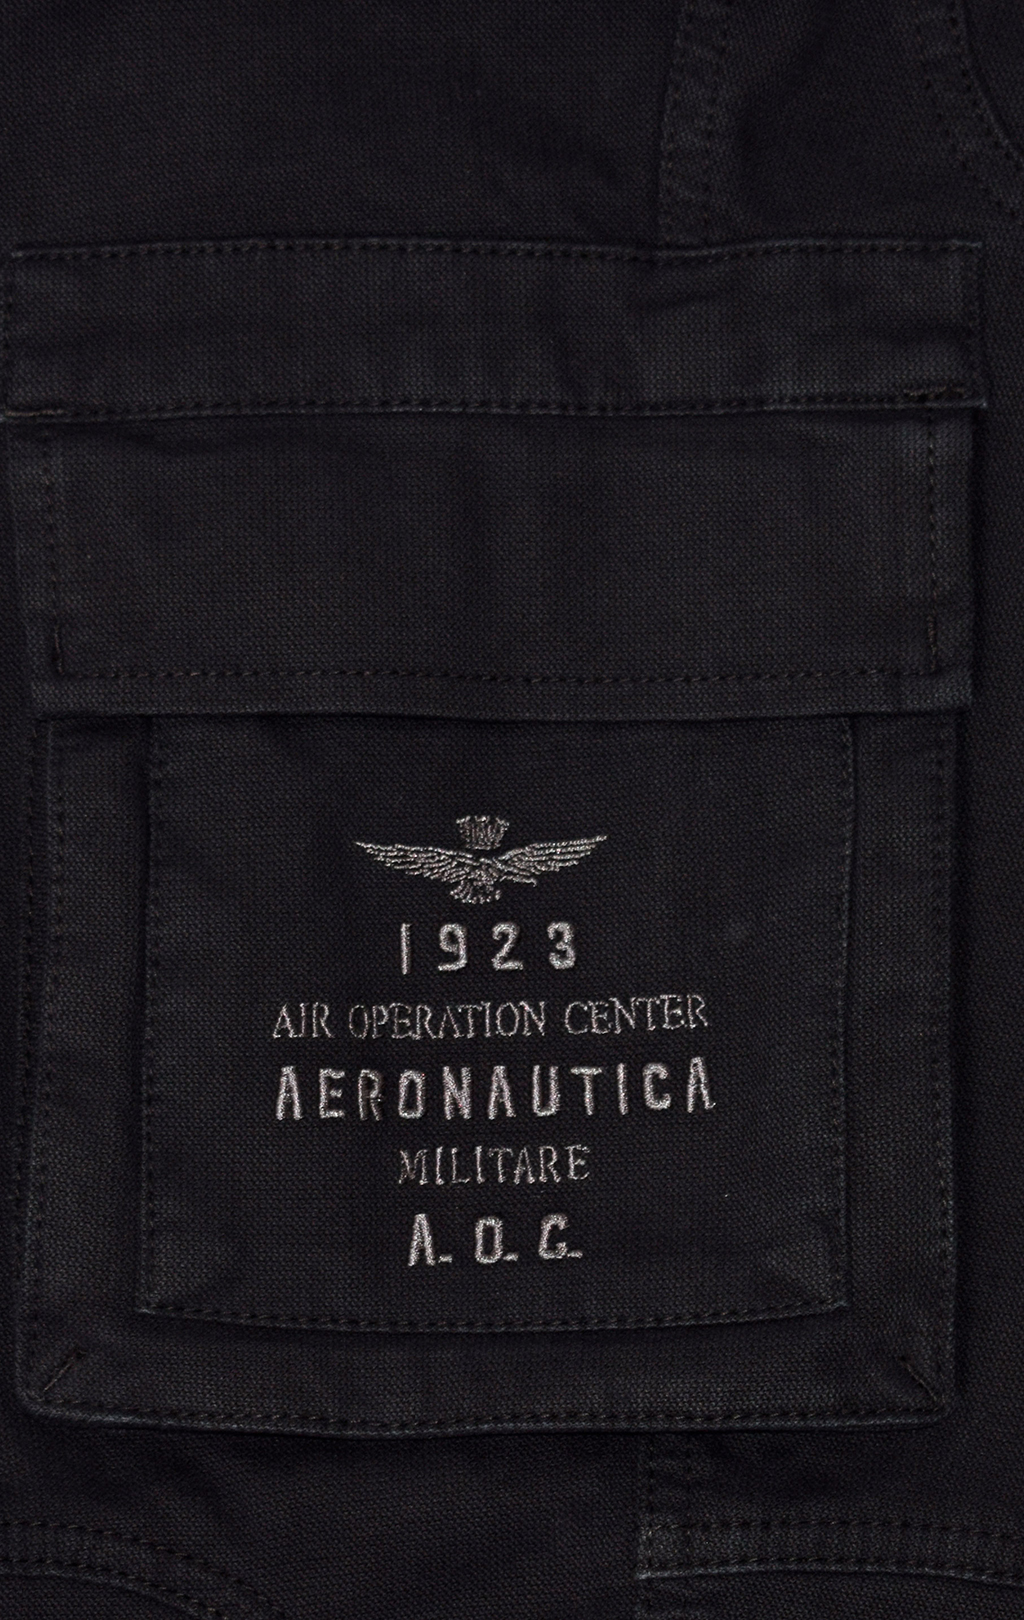 Брюки-карго AERONAUTICA MILITARE плотные FW 21/22/AL jet black (PA 1432) 